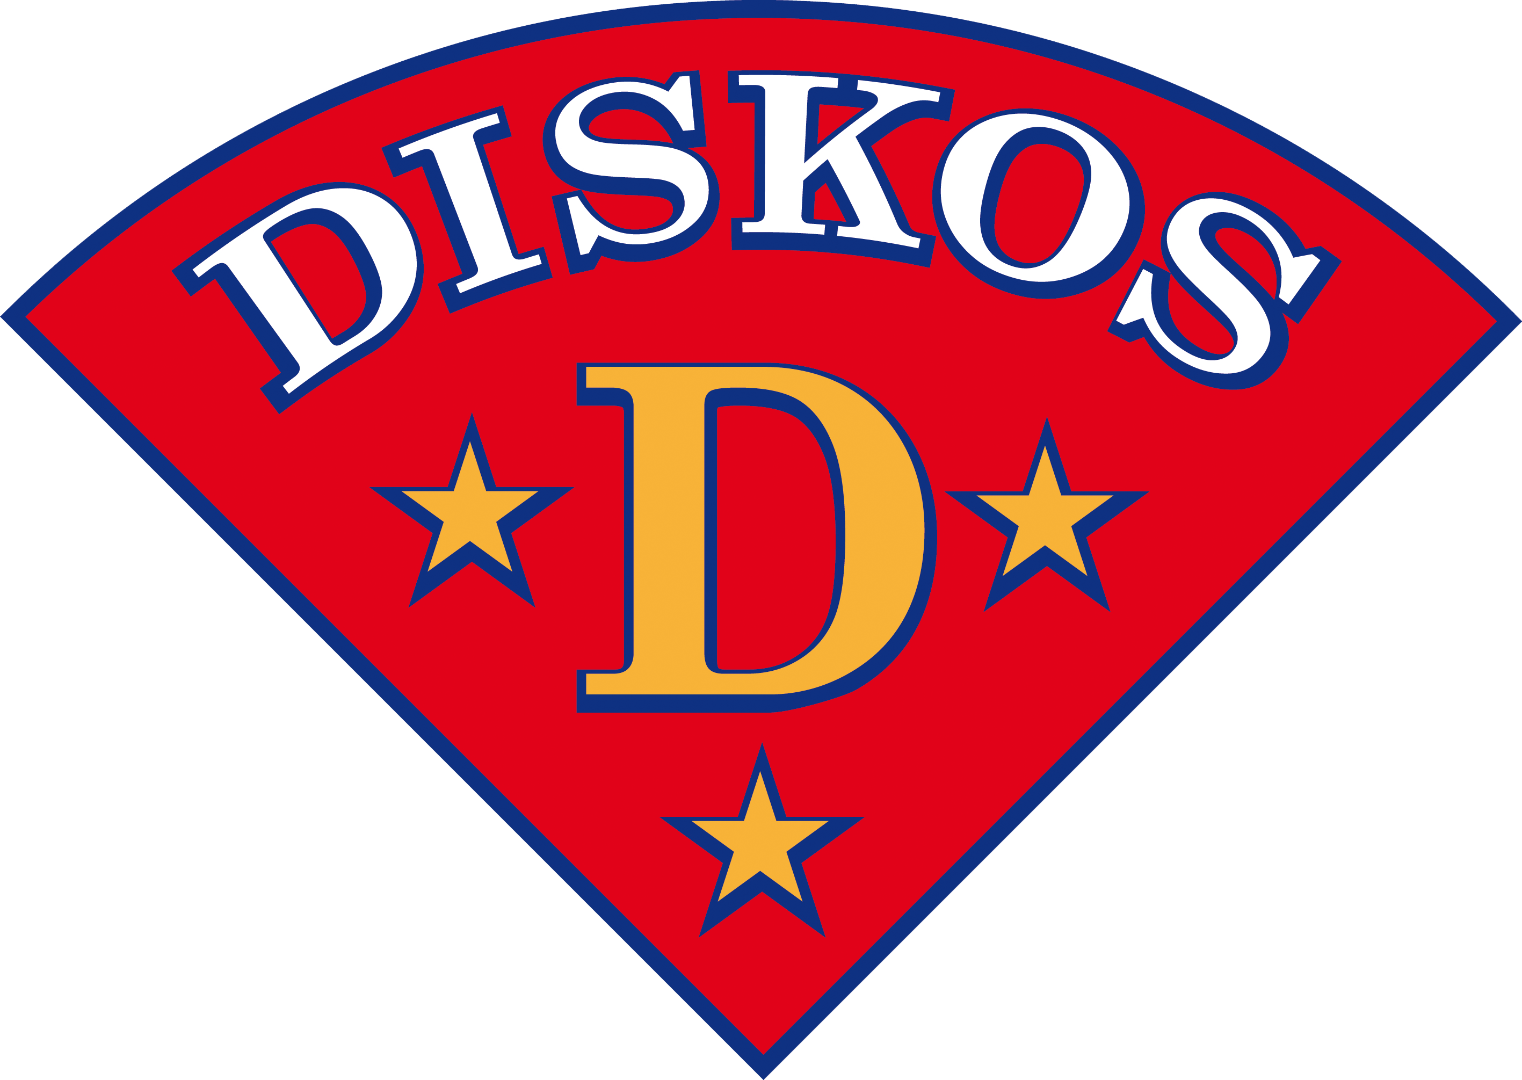 Diskos B kaudella 2017-2018